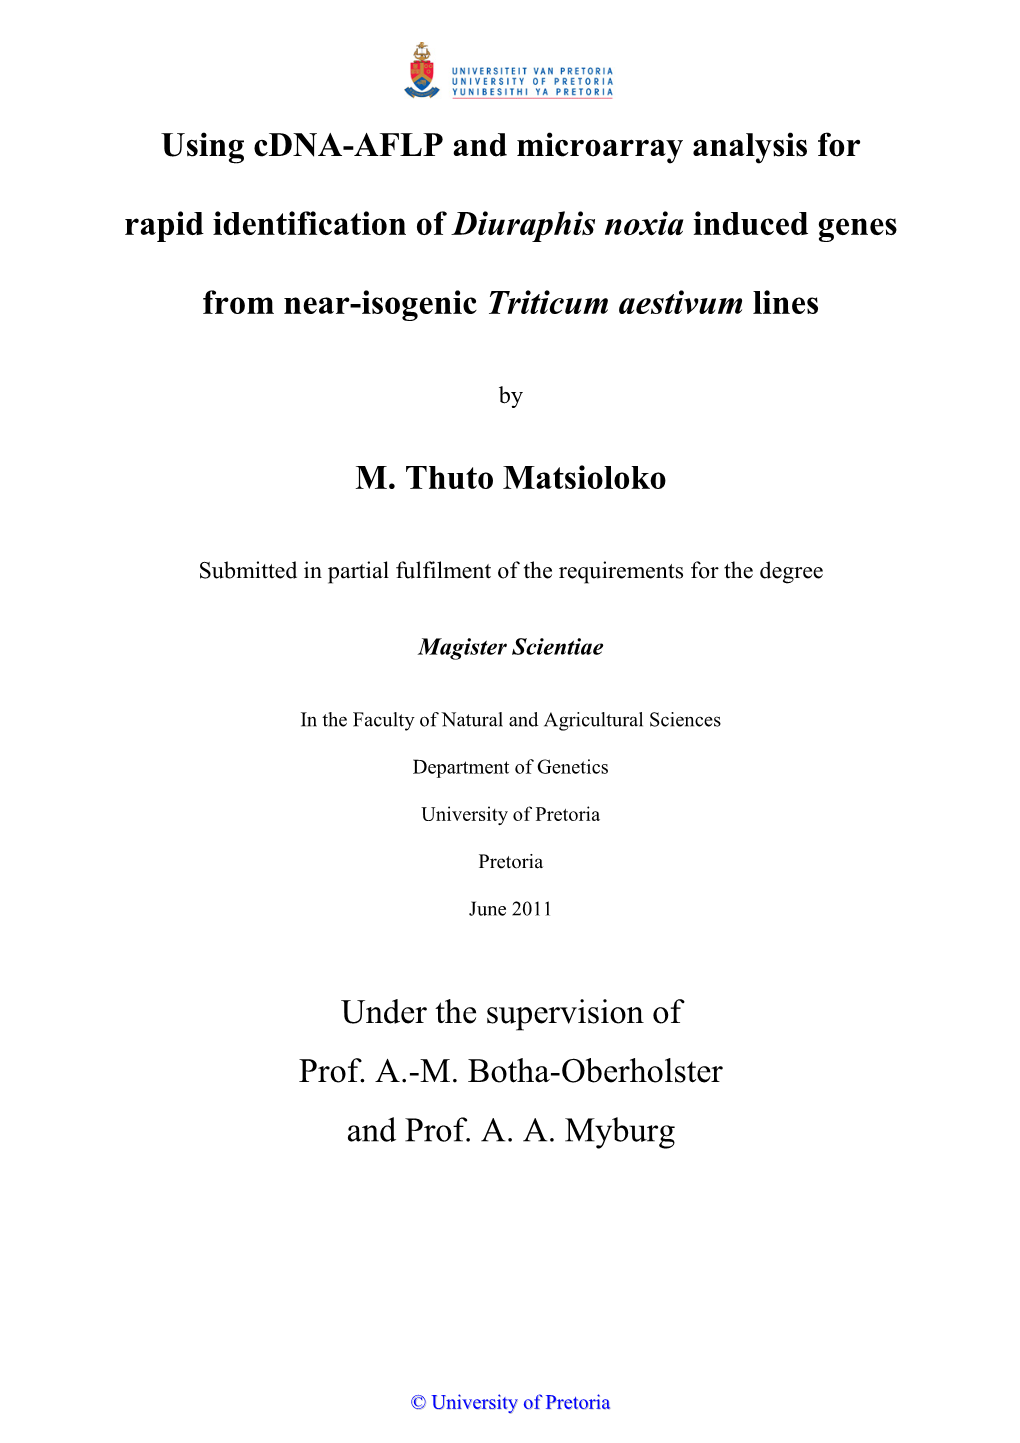 Thuto MSC Dissertation